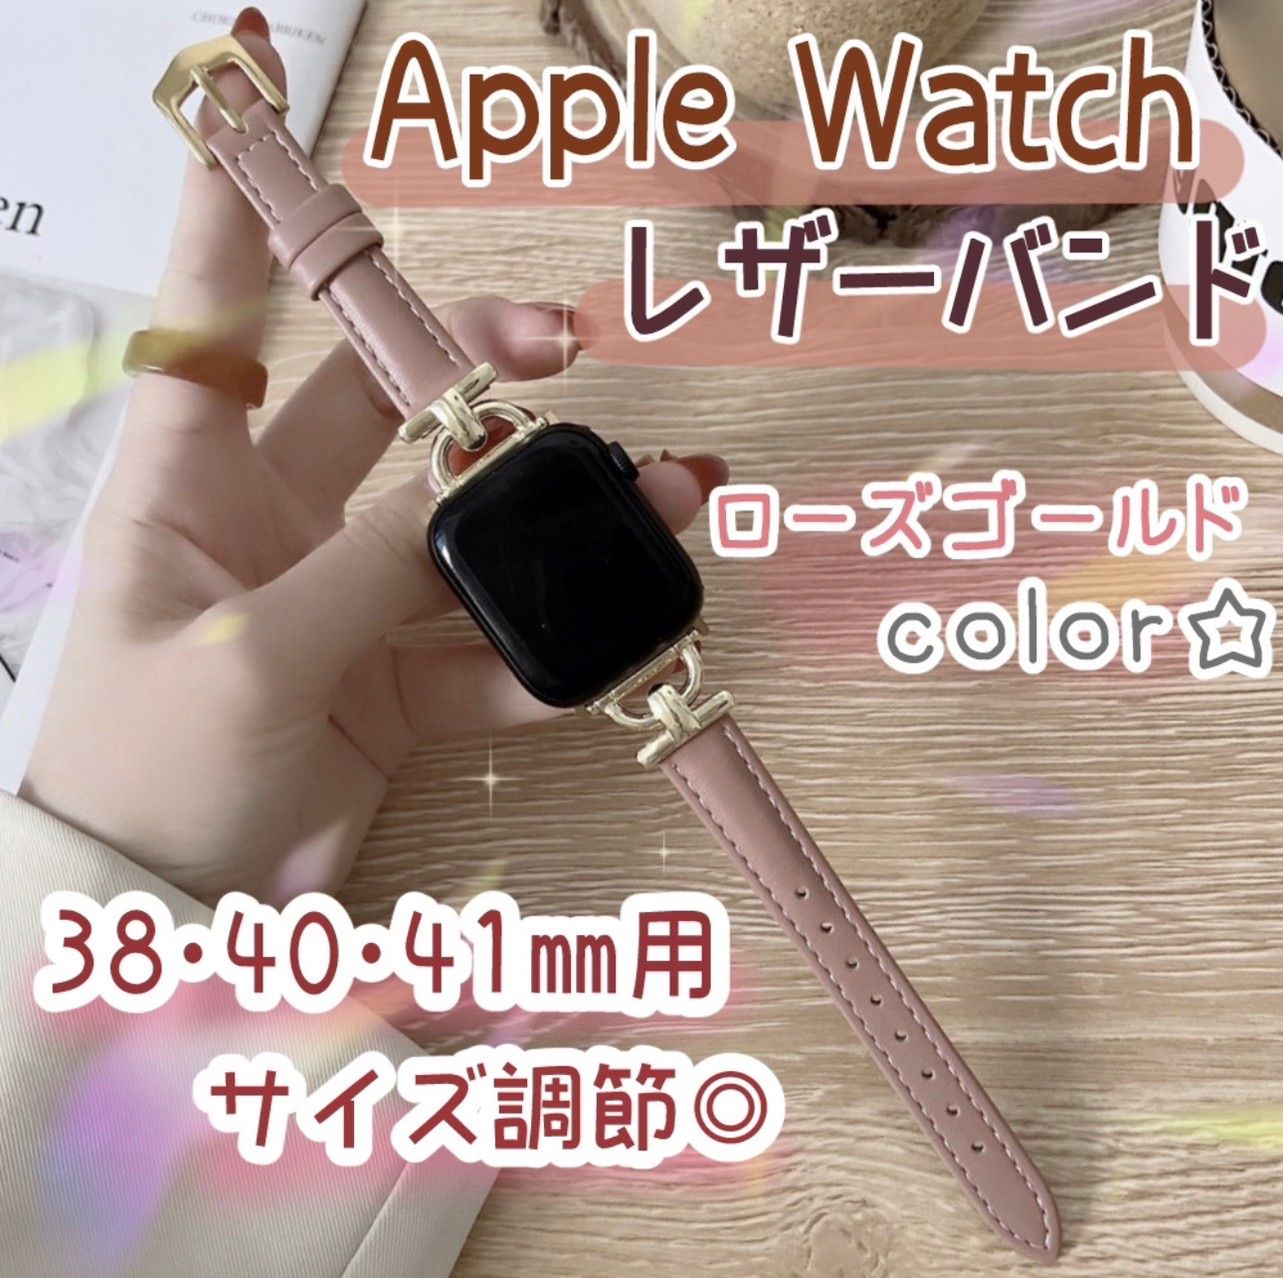 Apple Watch フェイクレザー バンド ライトピンク+ローズ